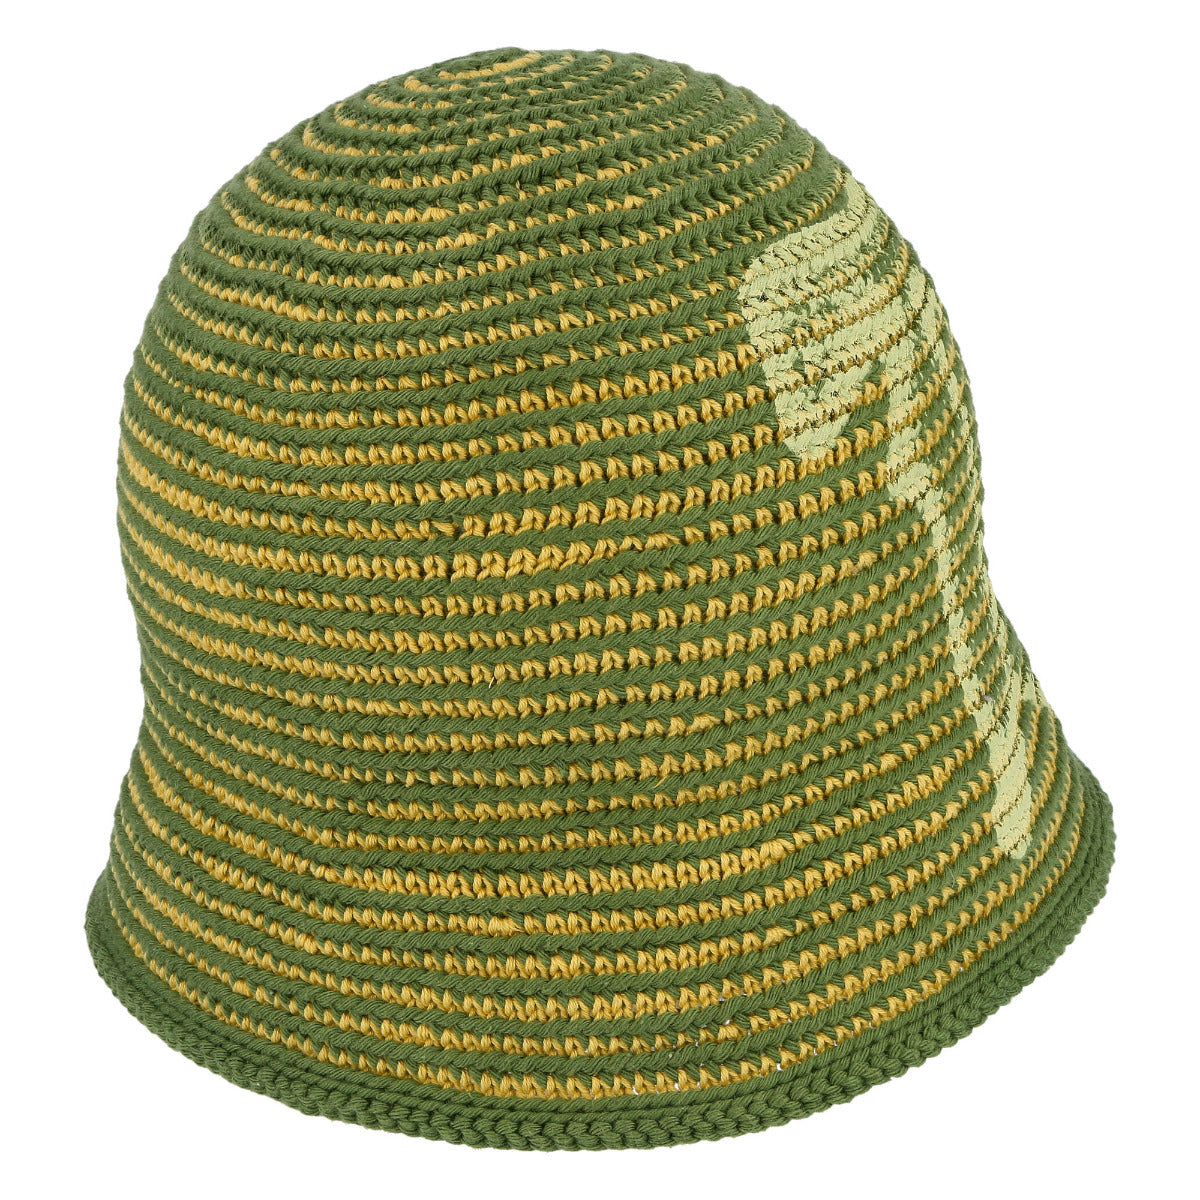 Crochet M Bucket Hat